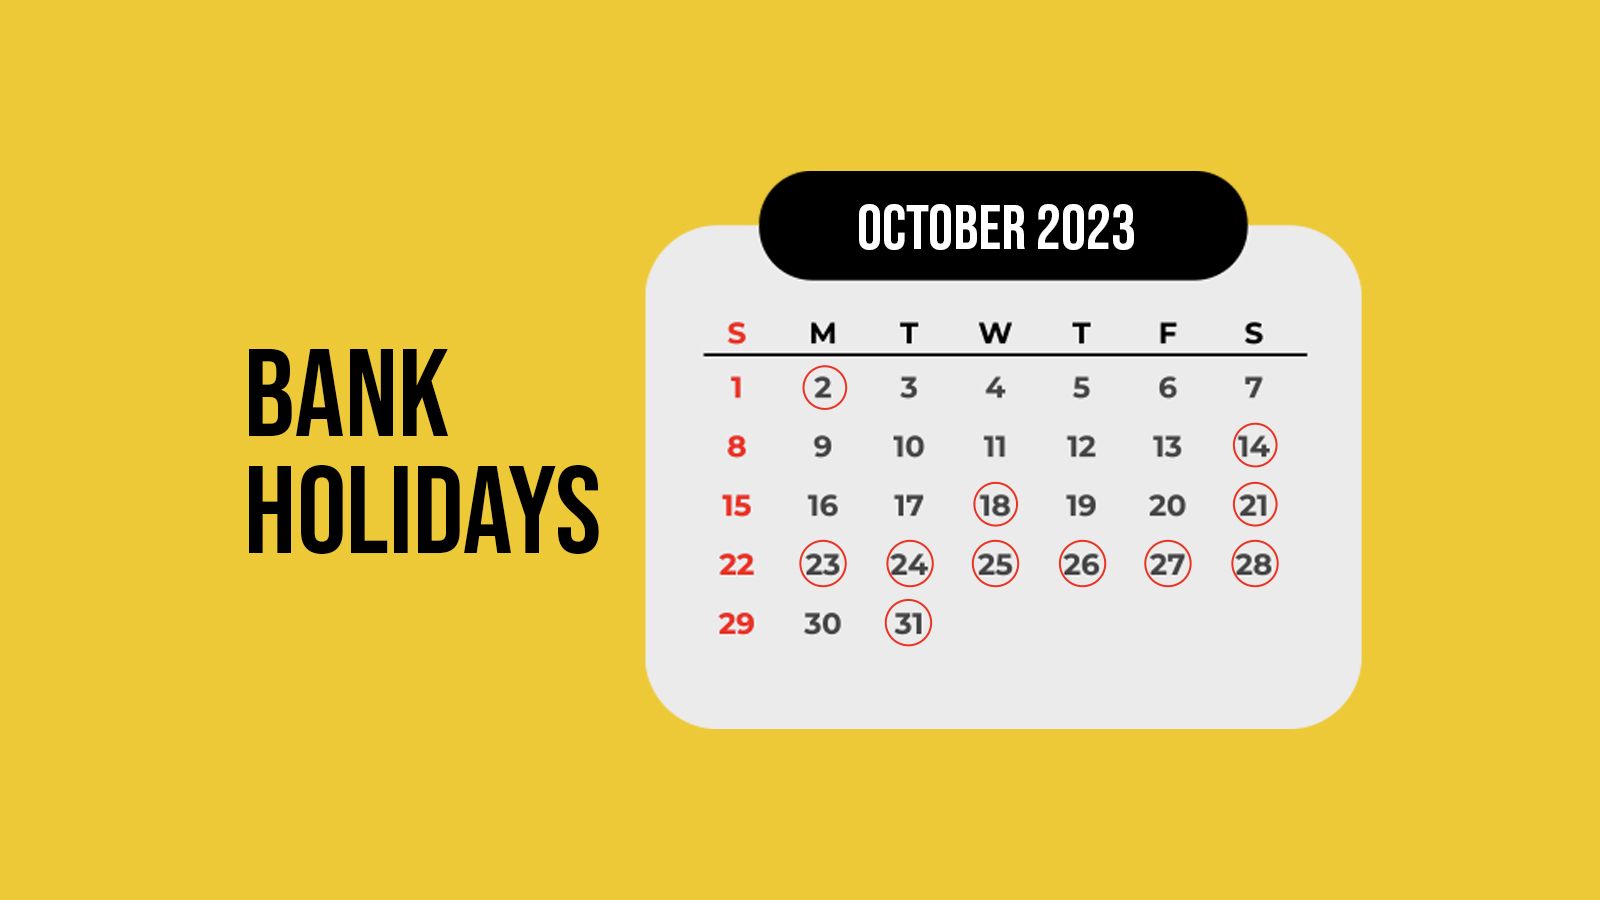 October Bank Holiday 2023